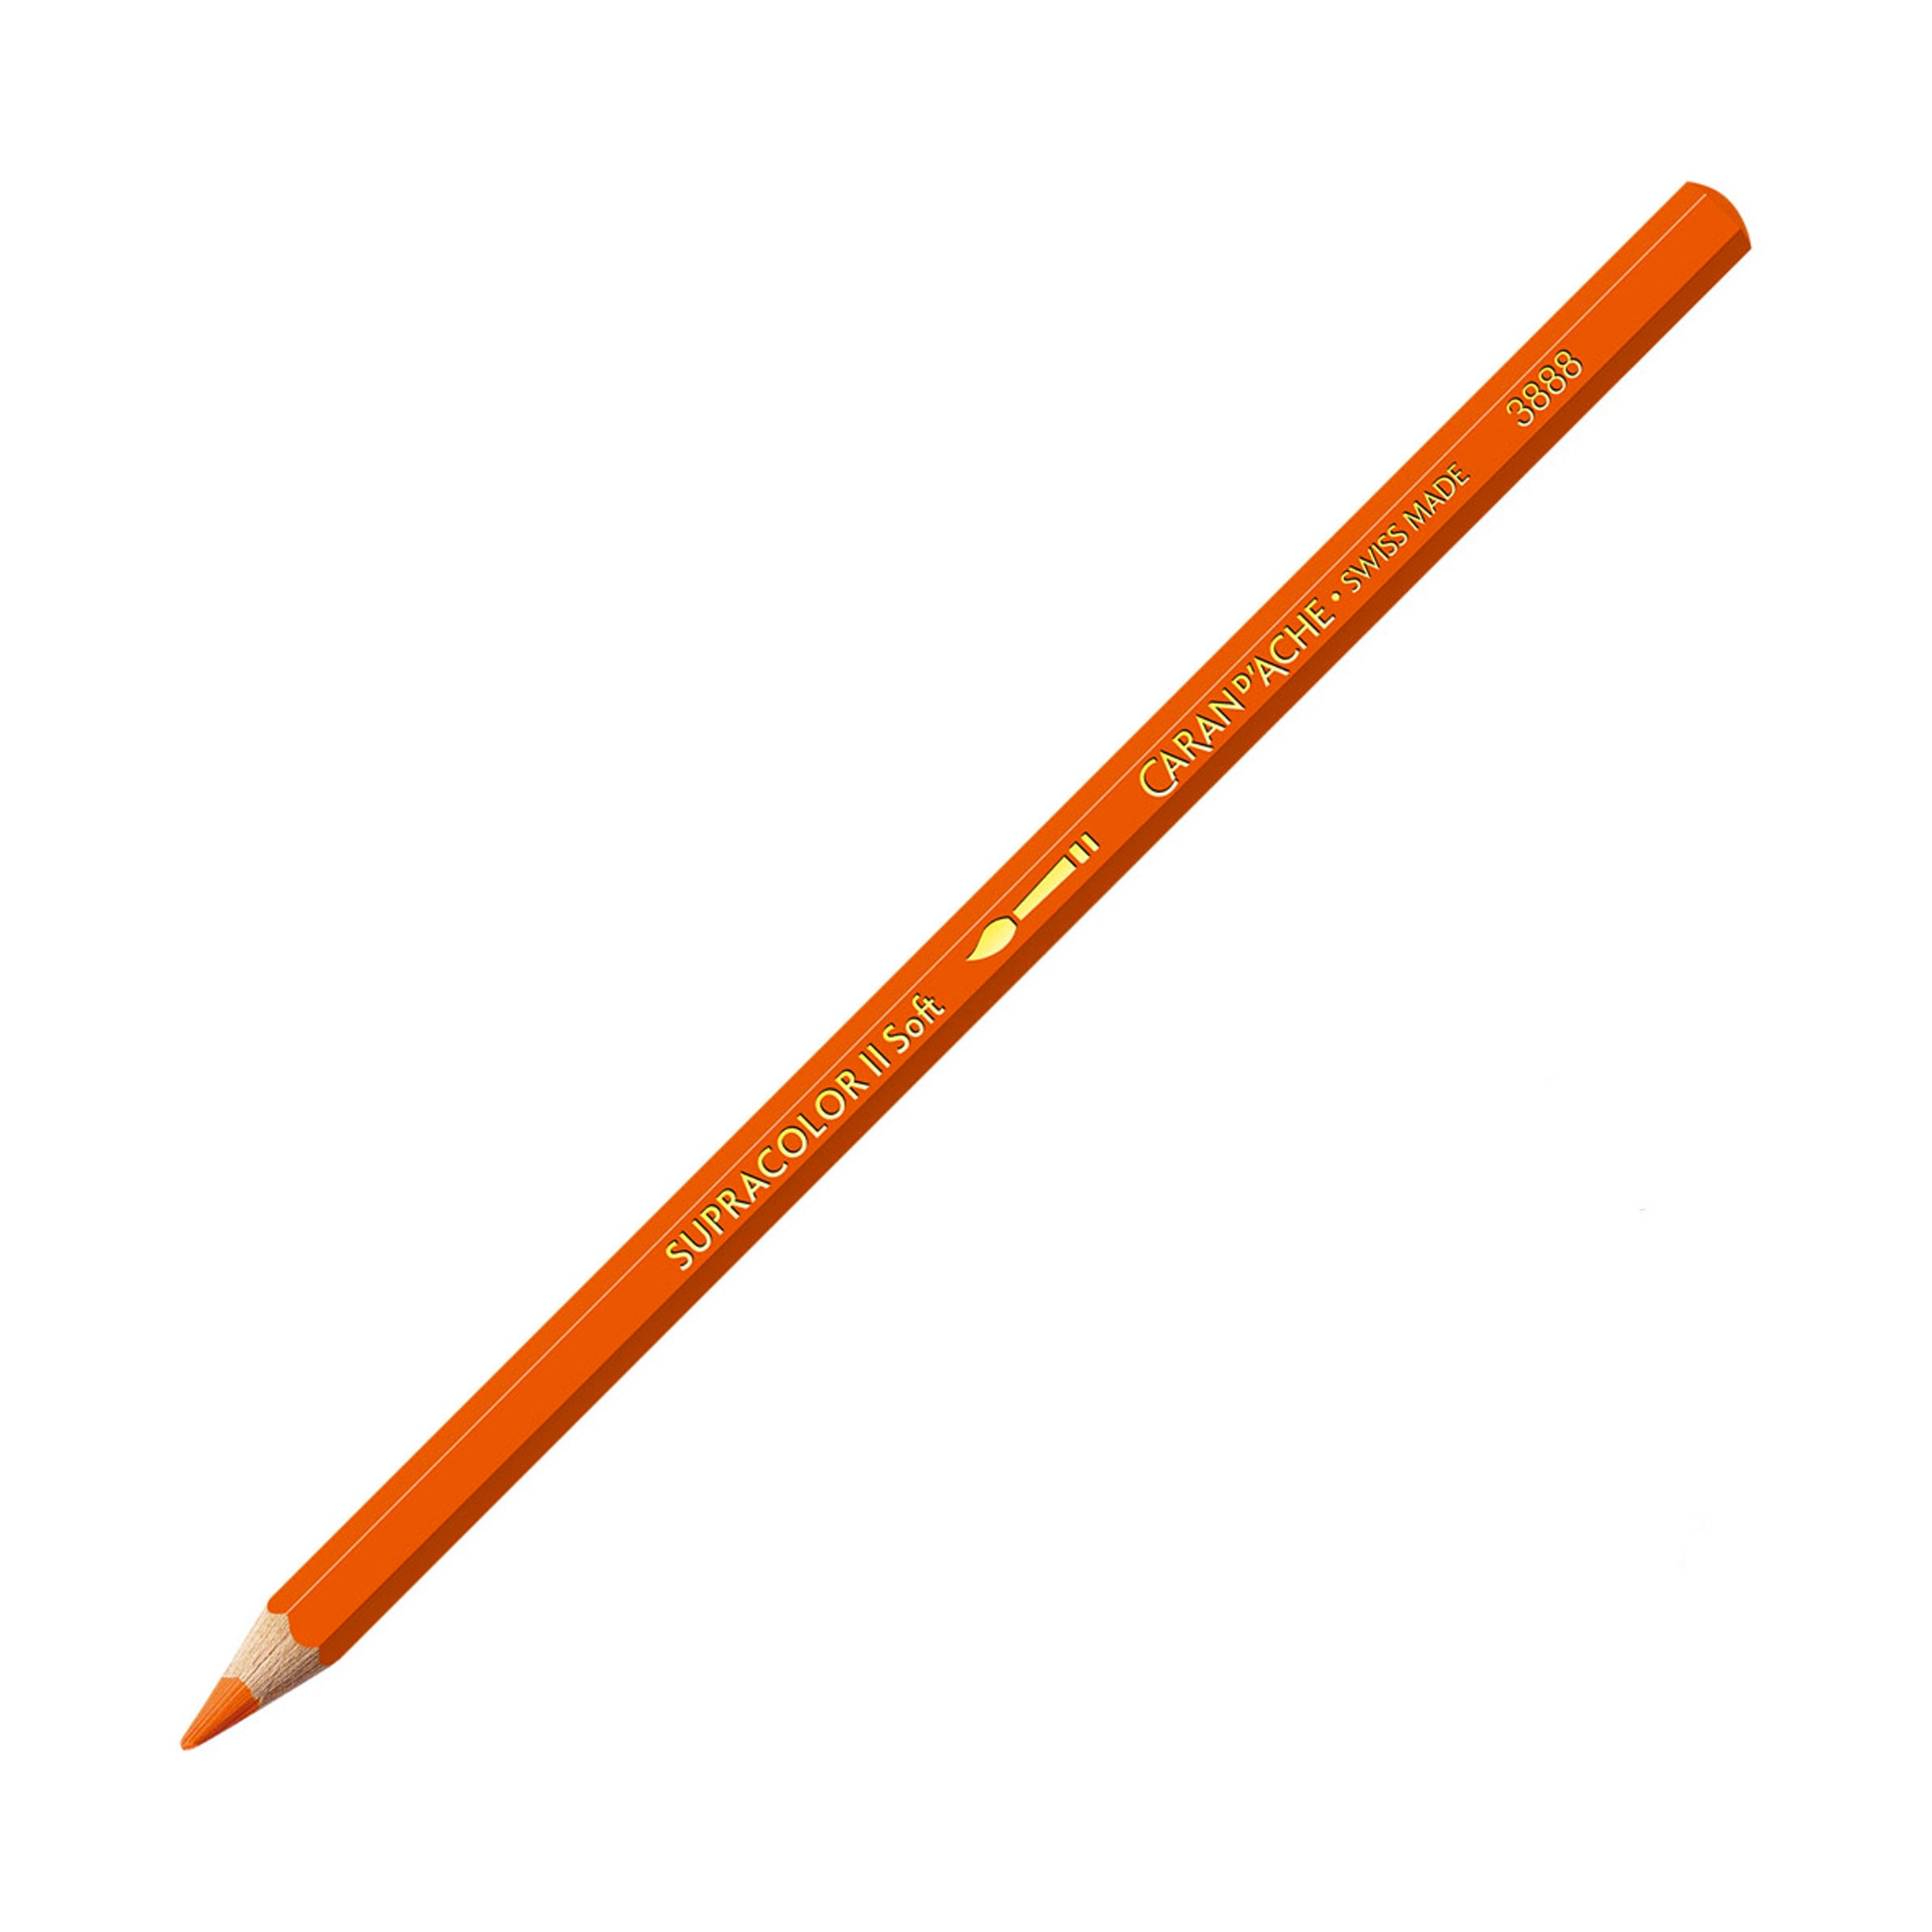 Caran d’Ache Supracolor Soft Aquarelle Pencil